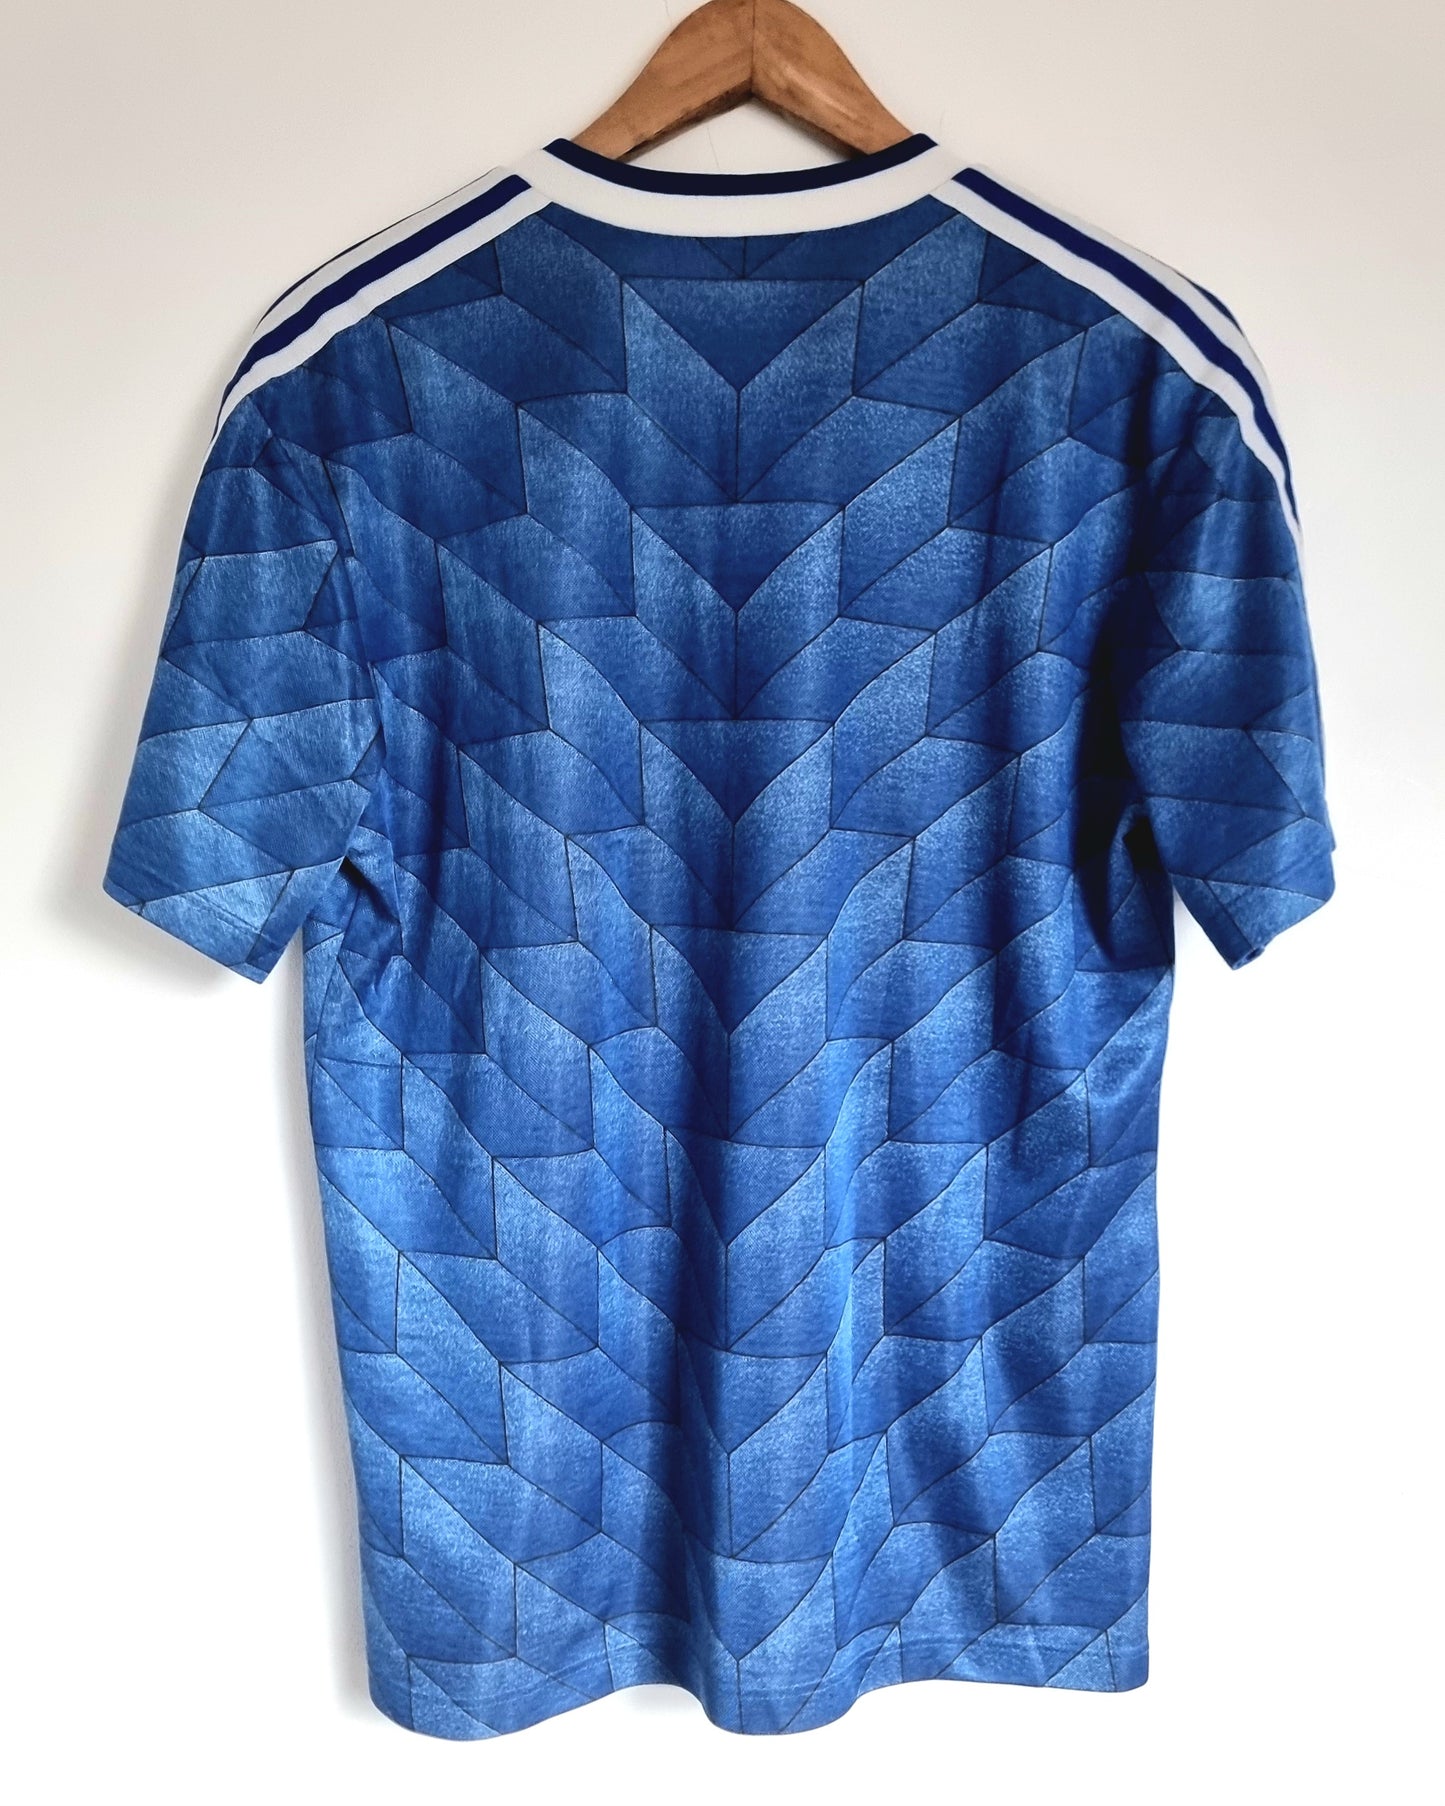 Adidas USA 88/90 Away Shirt Medium